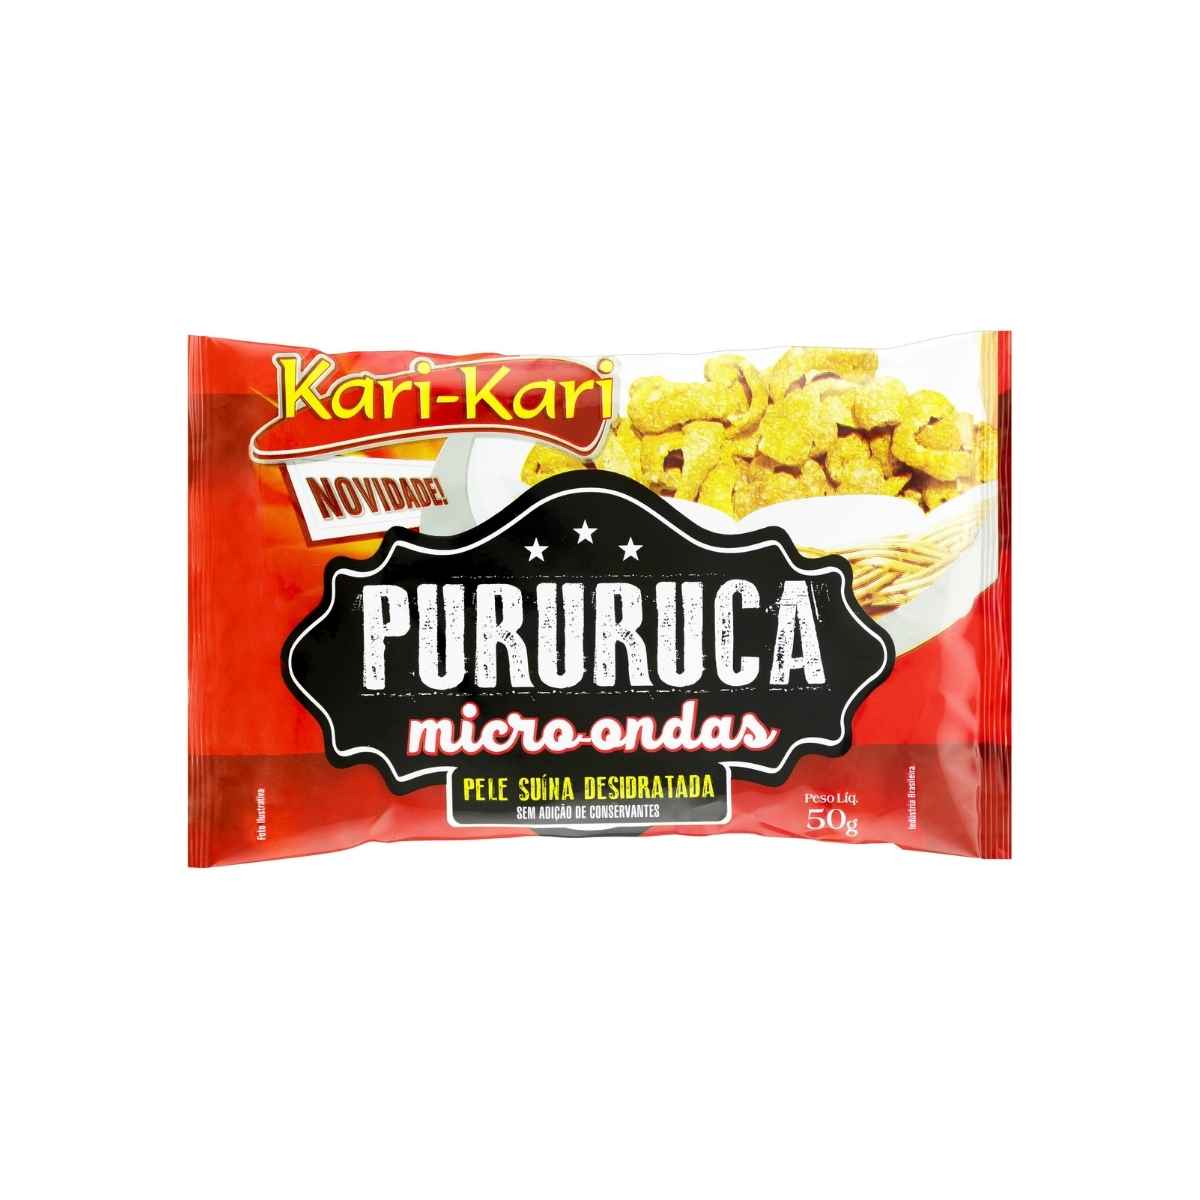 pururuca-microondas-kari-kari-50g-1.jpg